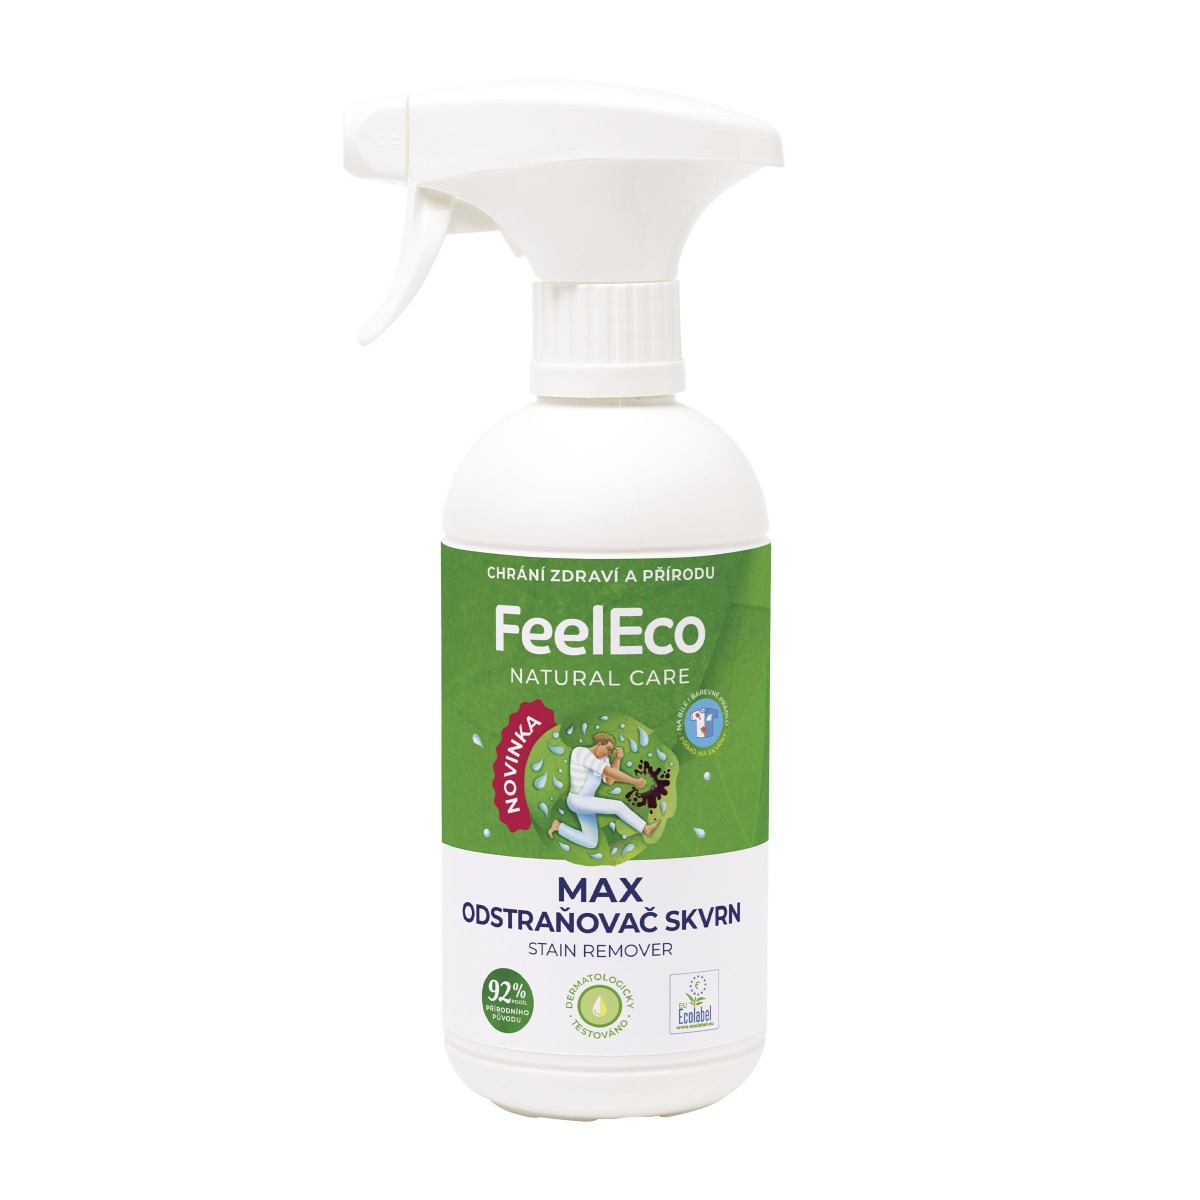 Feel Eco Odstraňovač skvrn MAX 450 ml Feel Eco